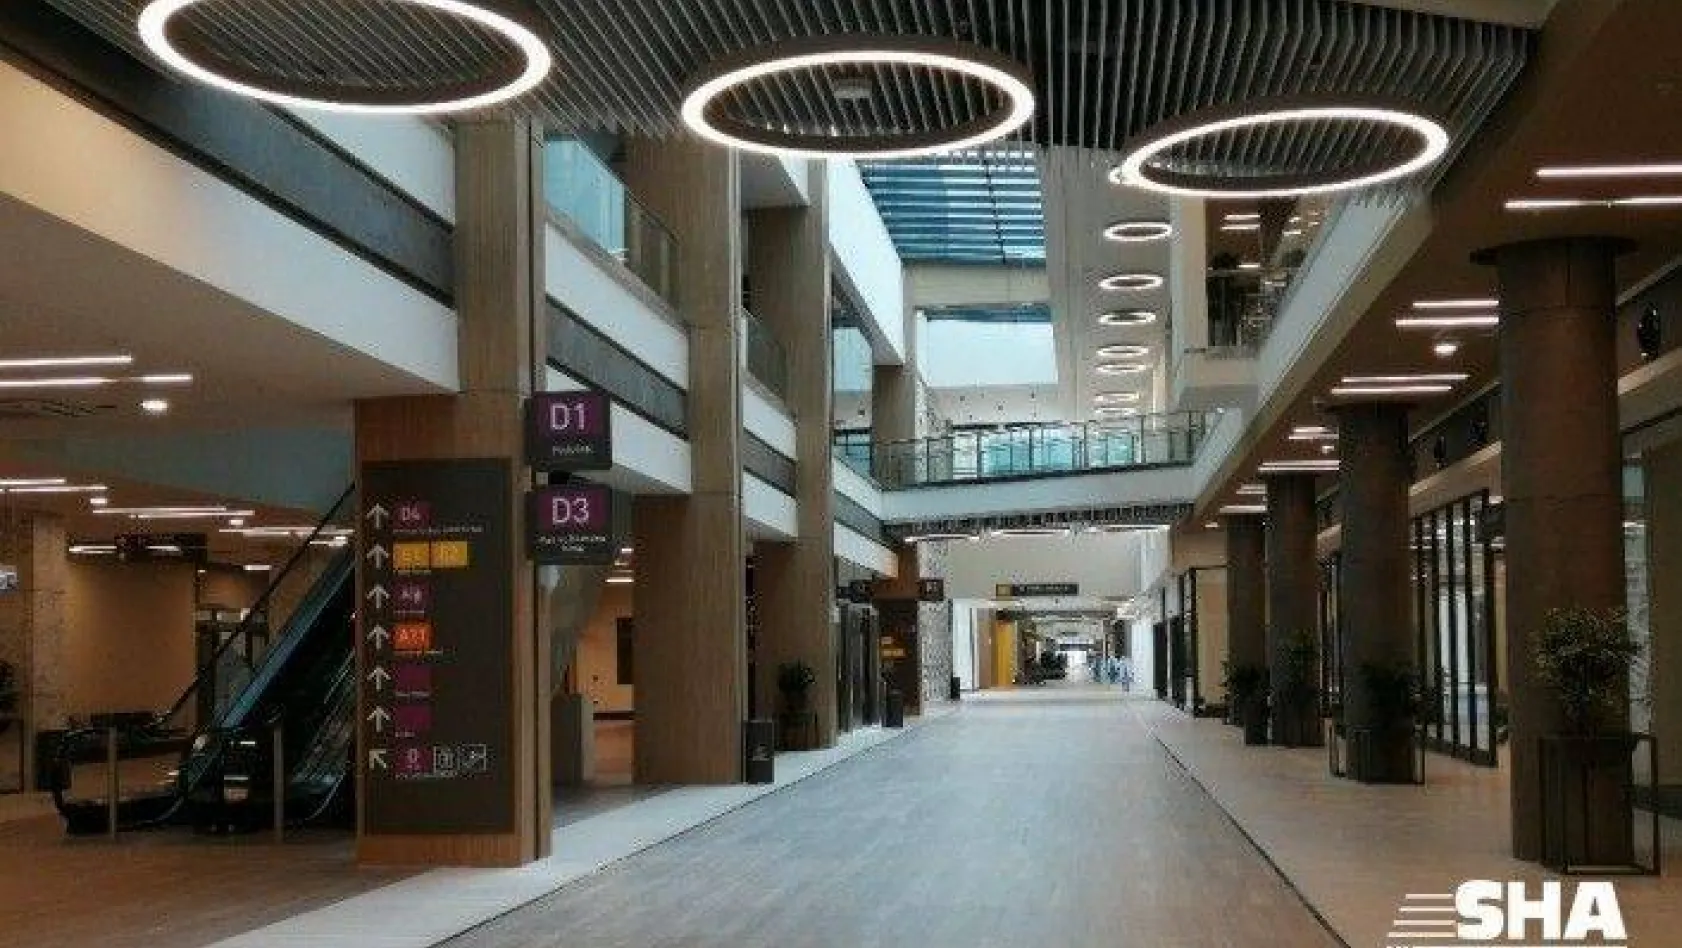 Başakşehir Çam ve Sakura Şehir Hastanesi'nin son teknolojiyle donatılan odaları görüntülendi